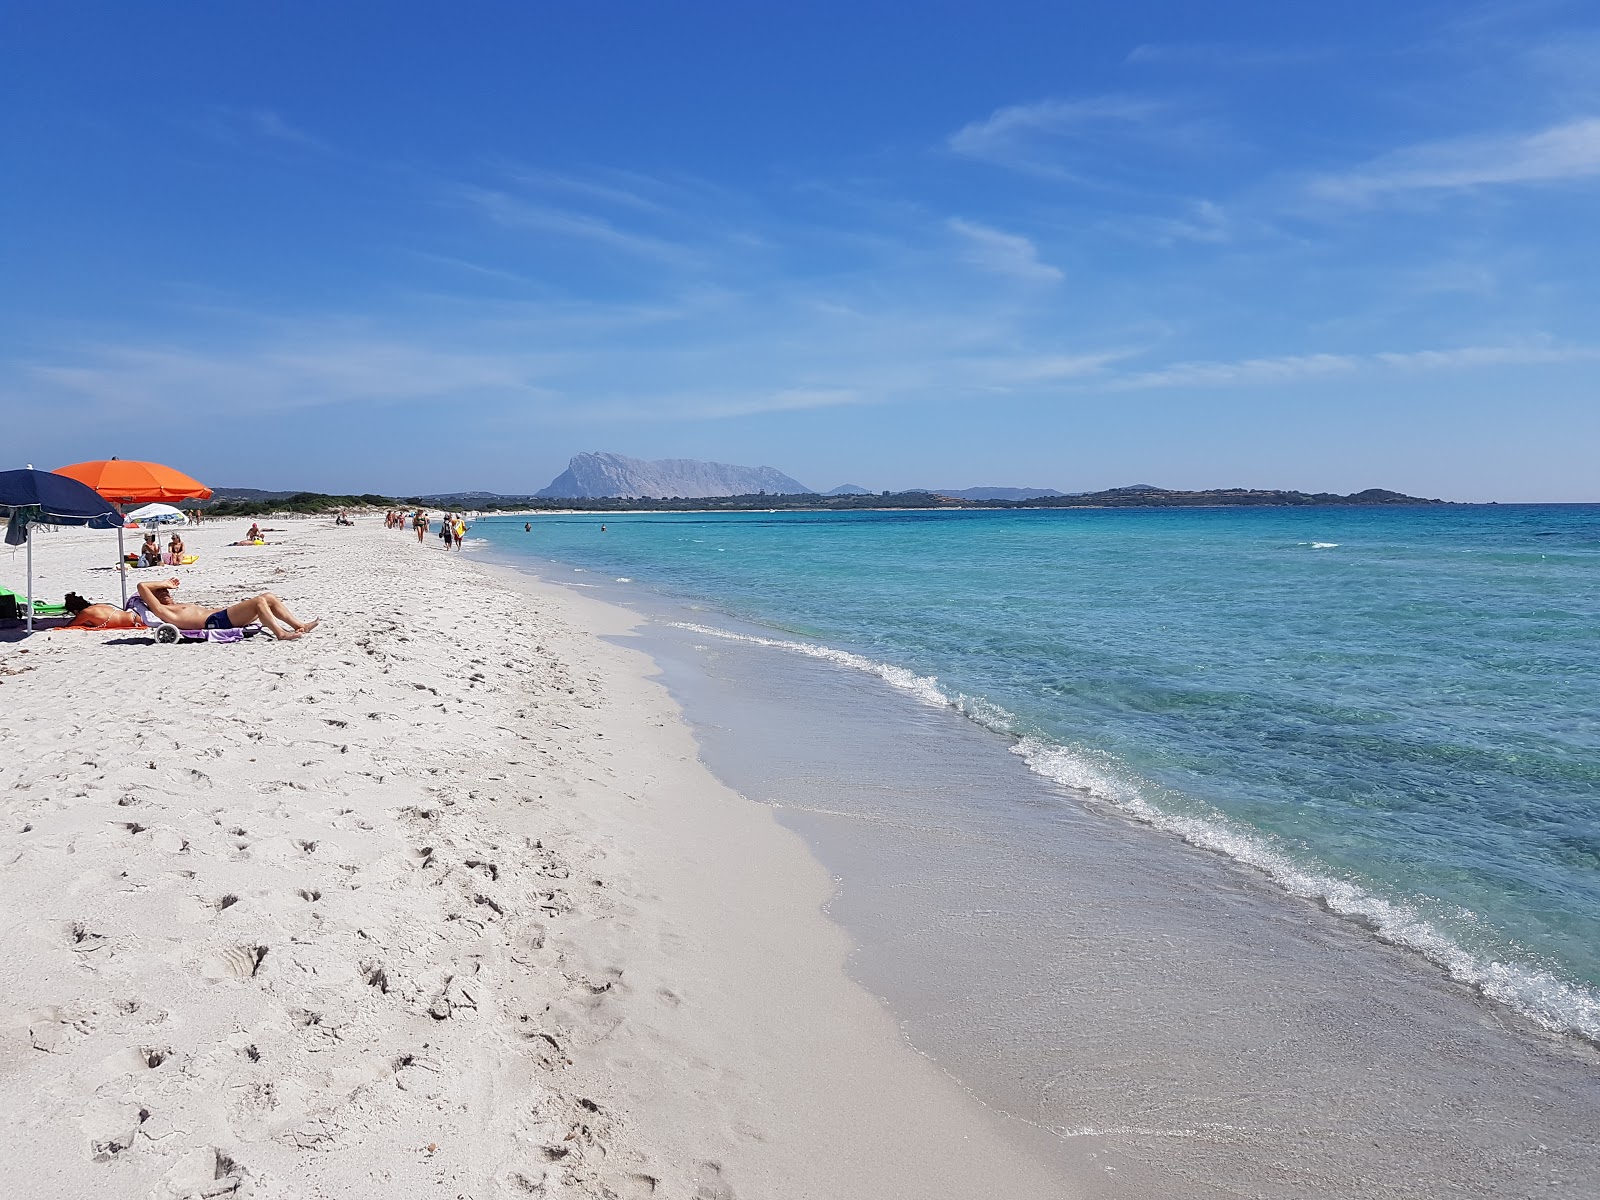 La Cinta Plajı'in fotoğrafı parlak ince kum yüzey ile